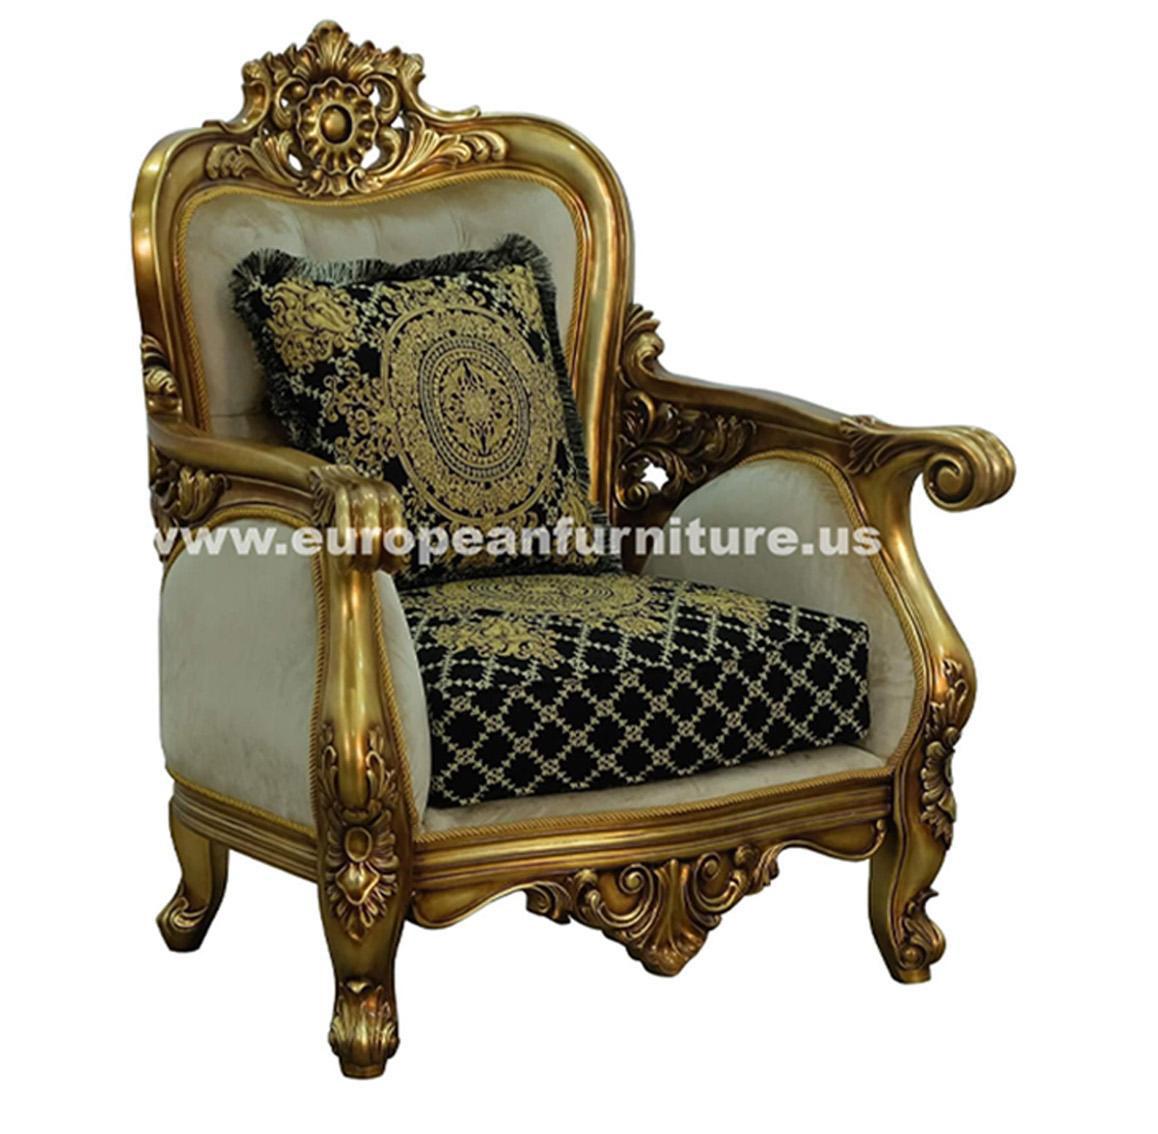 Classic, Traditional Arm Chair BELLAGIO 30018-C in Antique, Bronze, Black Fabric